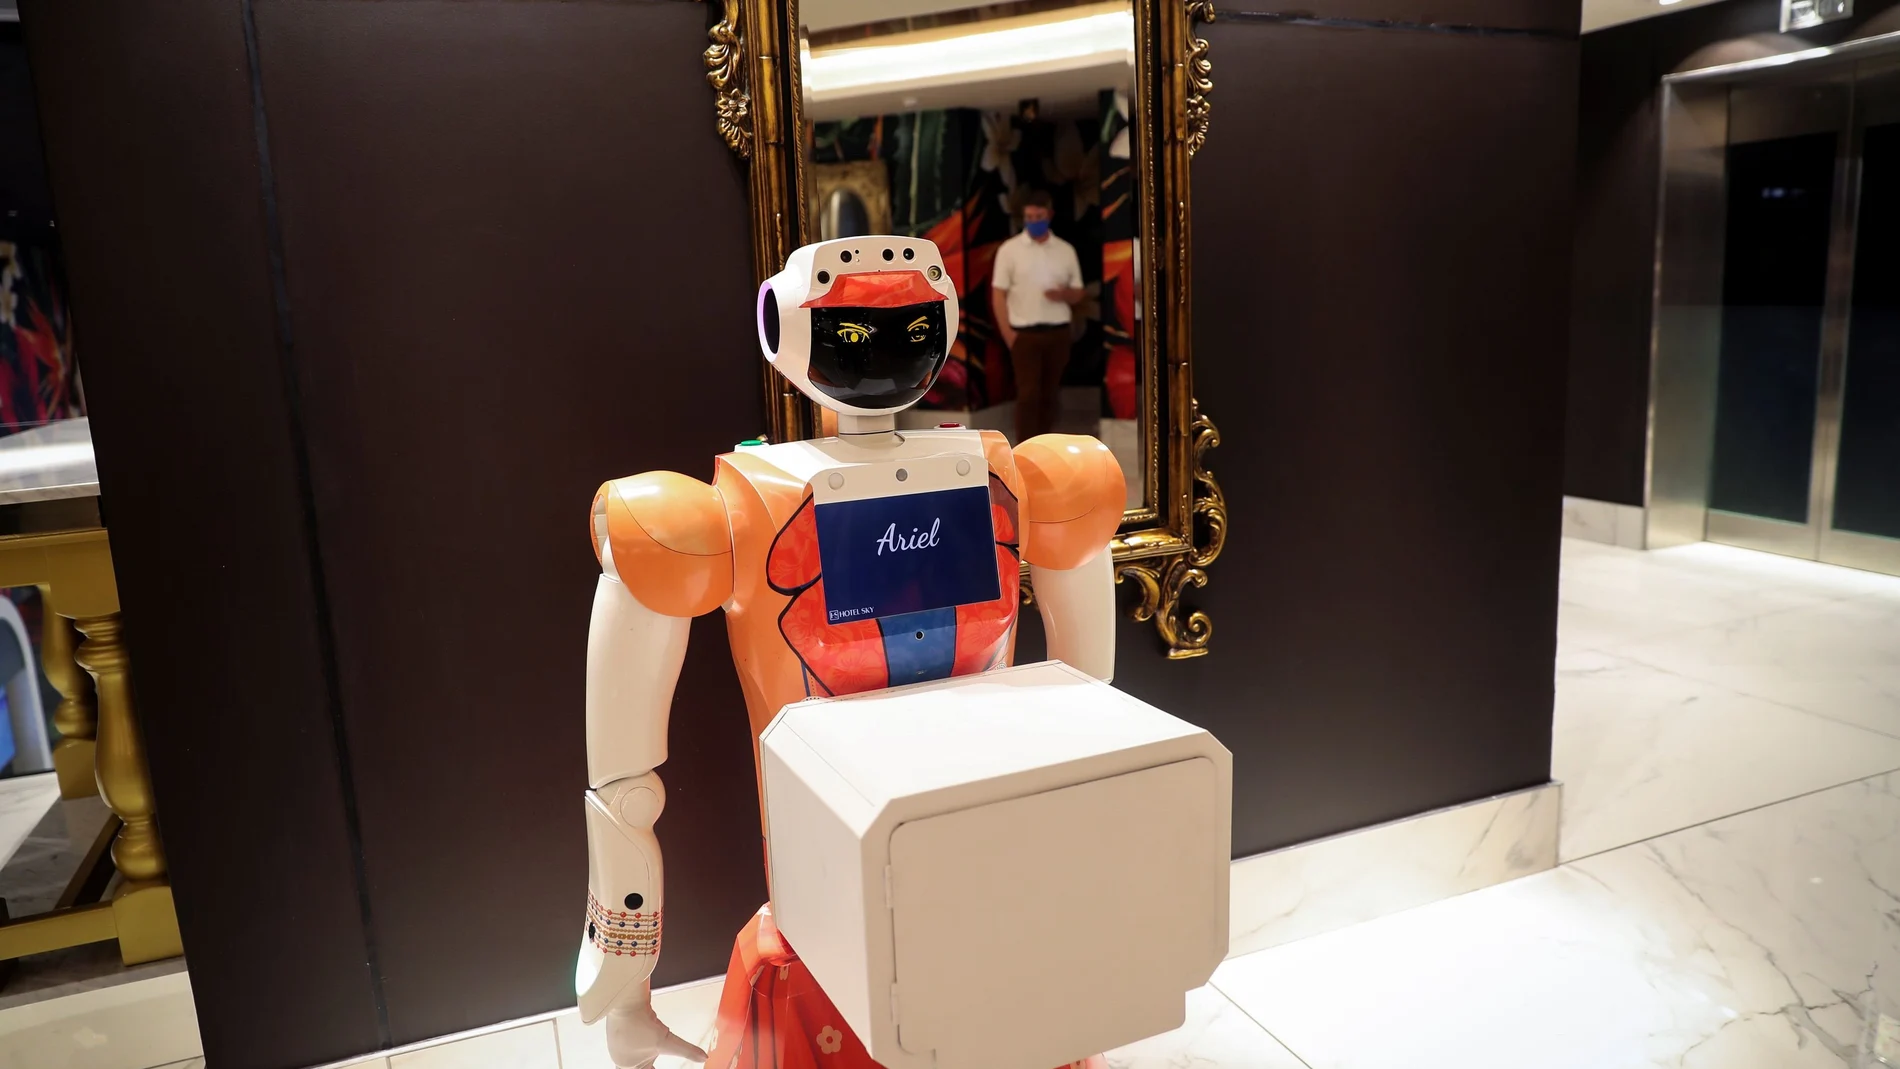 La nomenklatura tecnológica china cree que en un futuro los humanos serán remplazados por robots